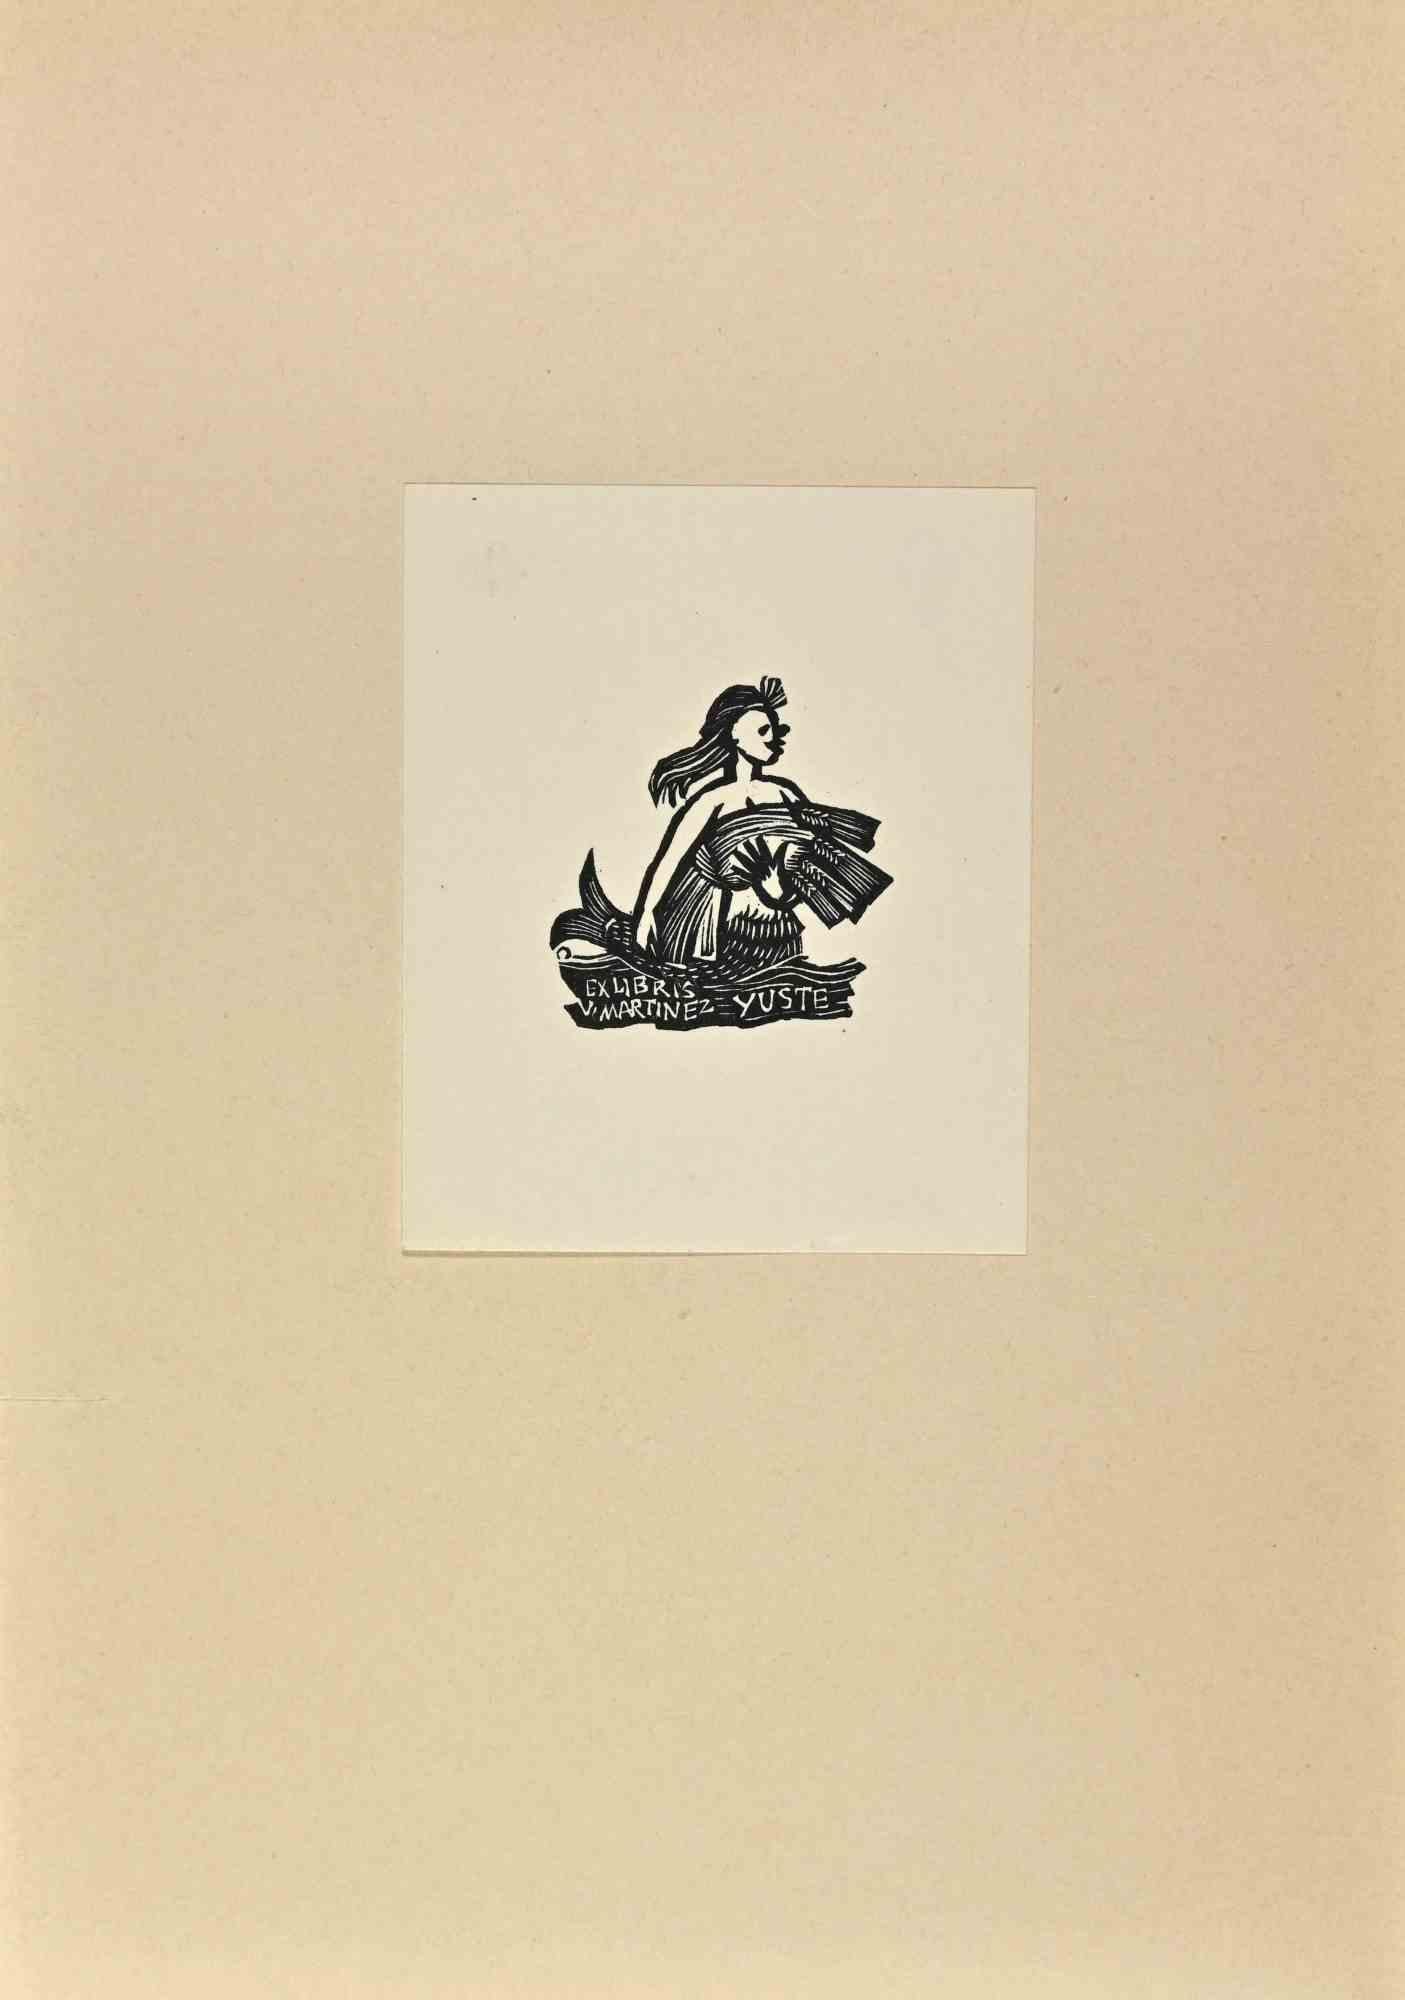   Ex Libris - V. Martinez Yuste - Holzschnitt - Mitte des 20. Jahrhunderts – Art von Unknown